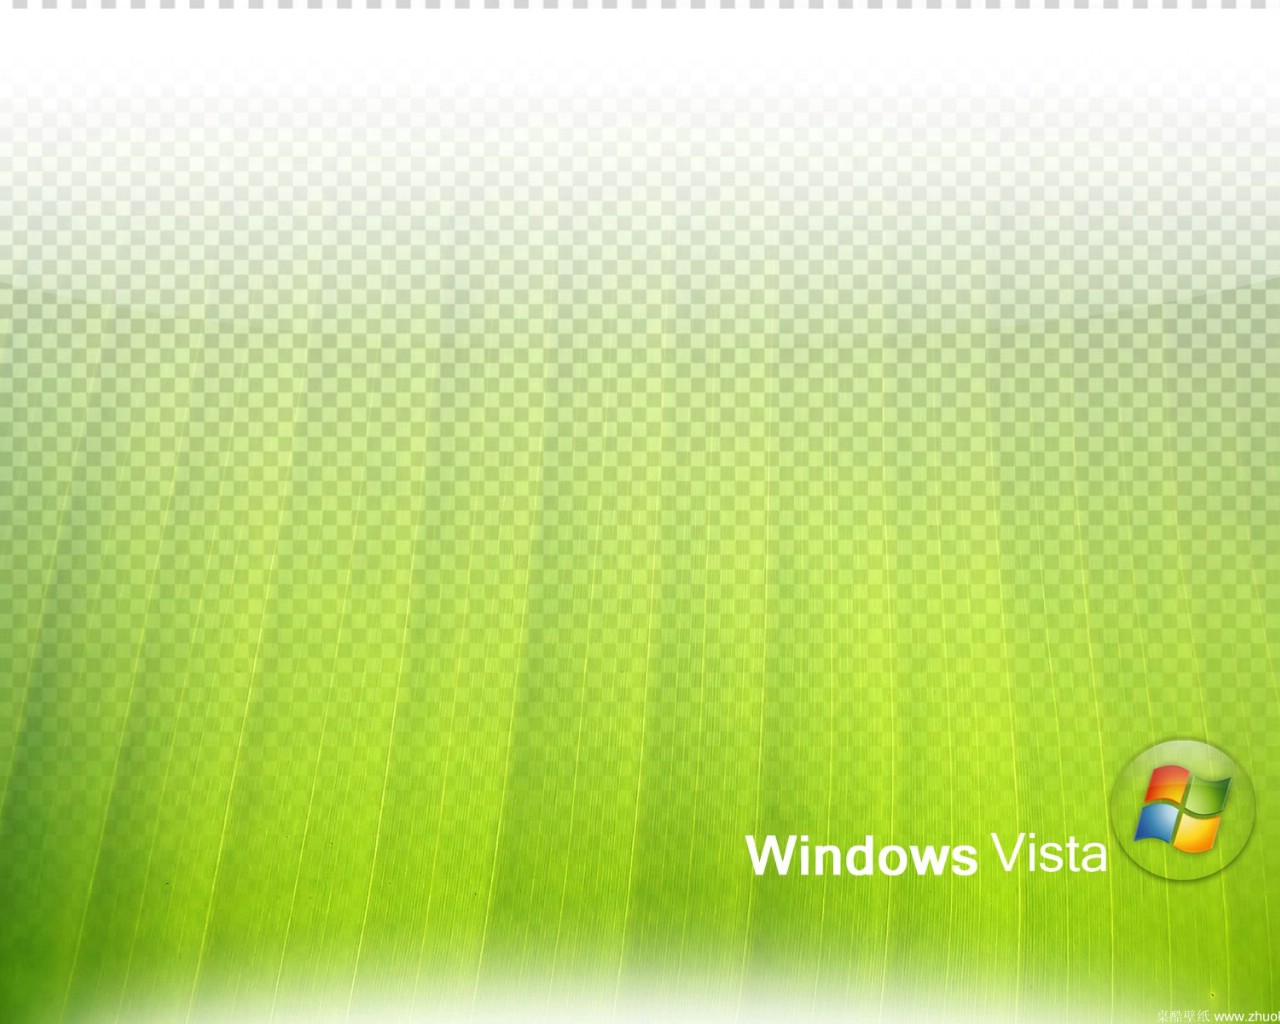 壁纸1280x1024Vista壁纸 壁纸24壁纸 Vista壁纸壁纸 Vista壁纸图片 Vista壁纸素材 系统壁纸 系统图库 系统图片素材桌面壁纸